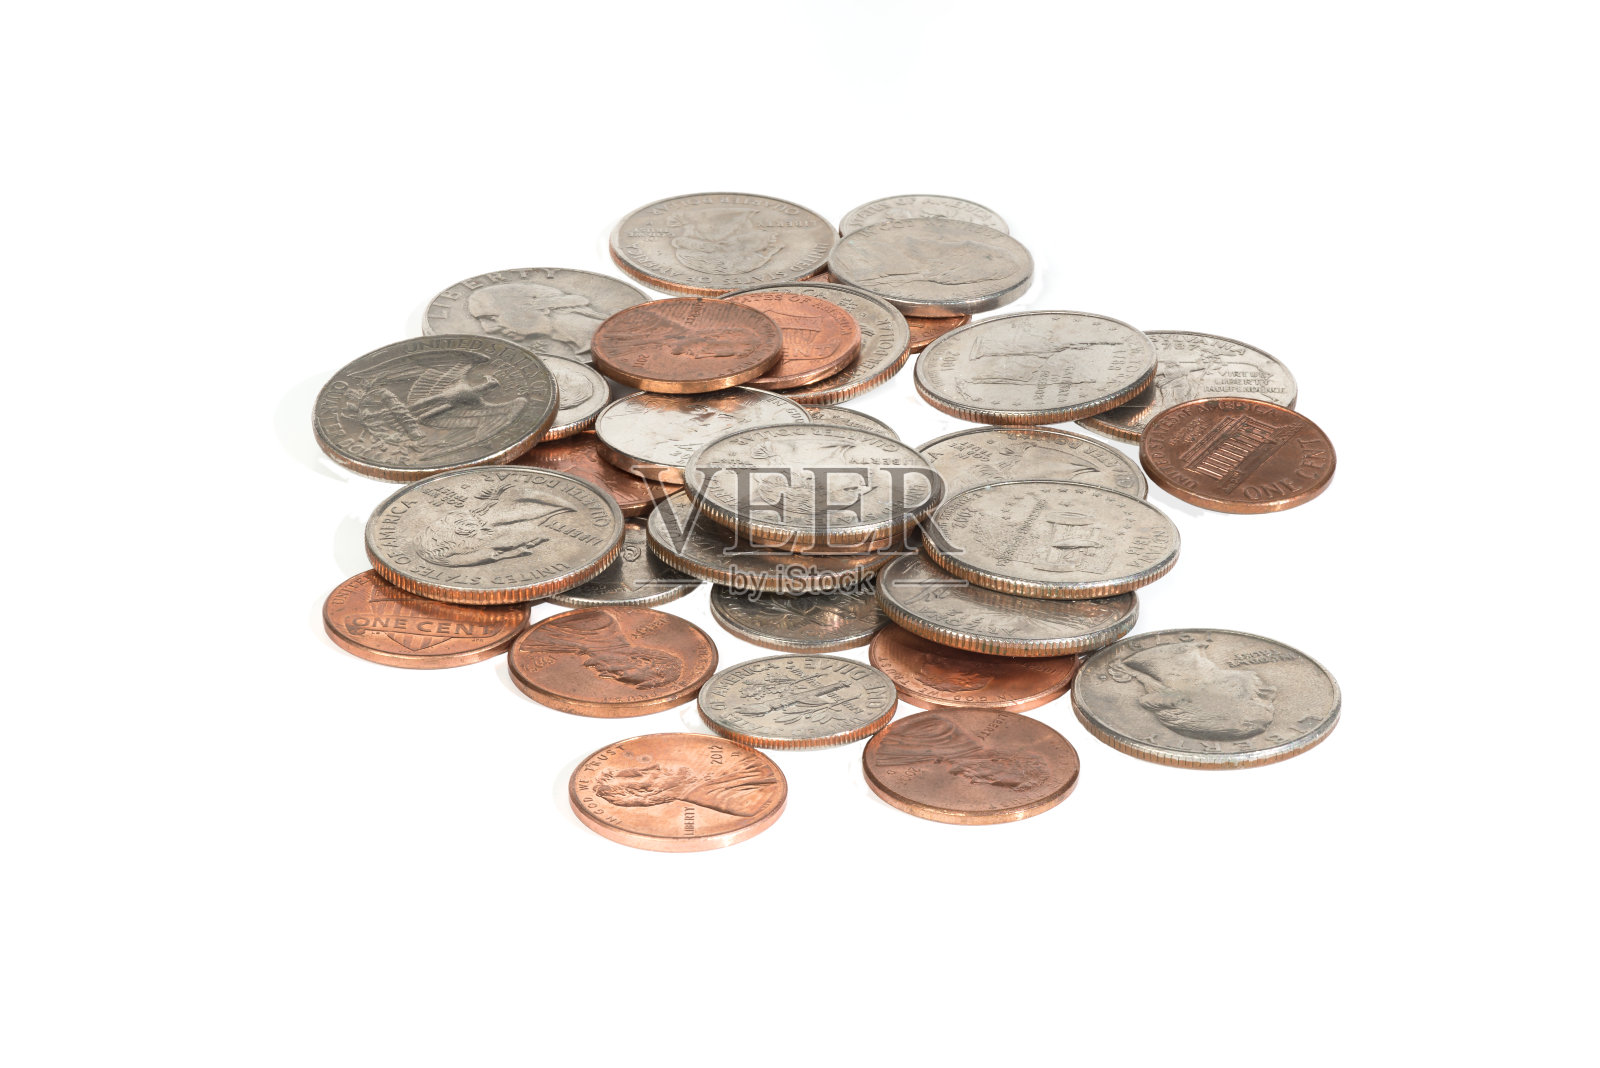 这是一堆美国硬币的特写——美分、一角和二角五分的硬币照片摄影图片